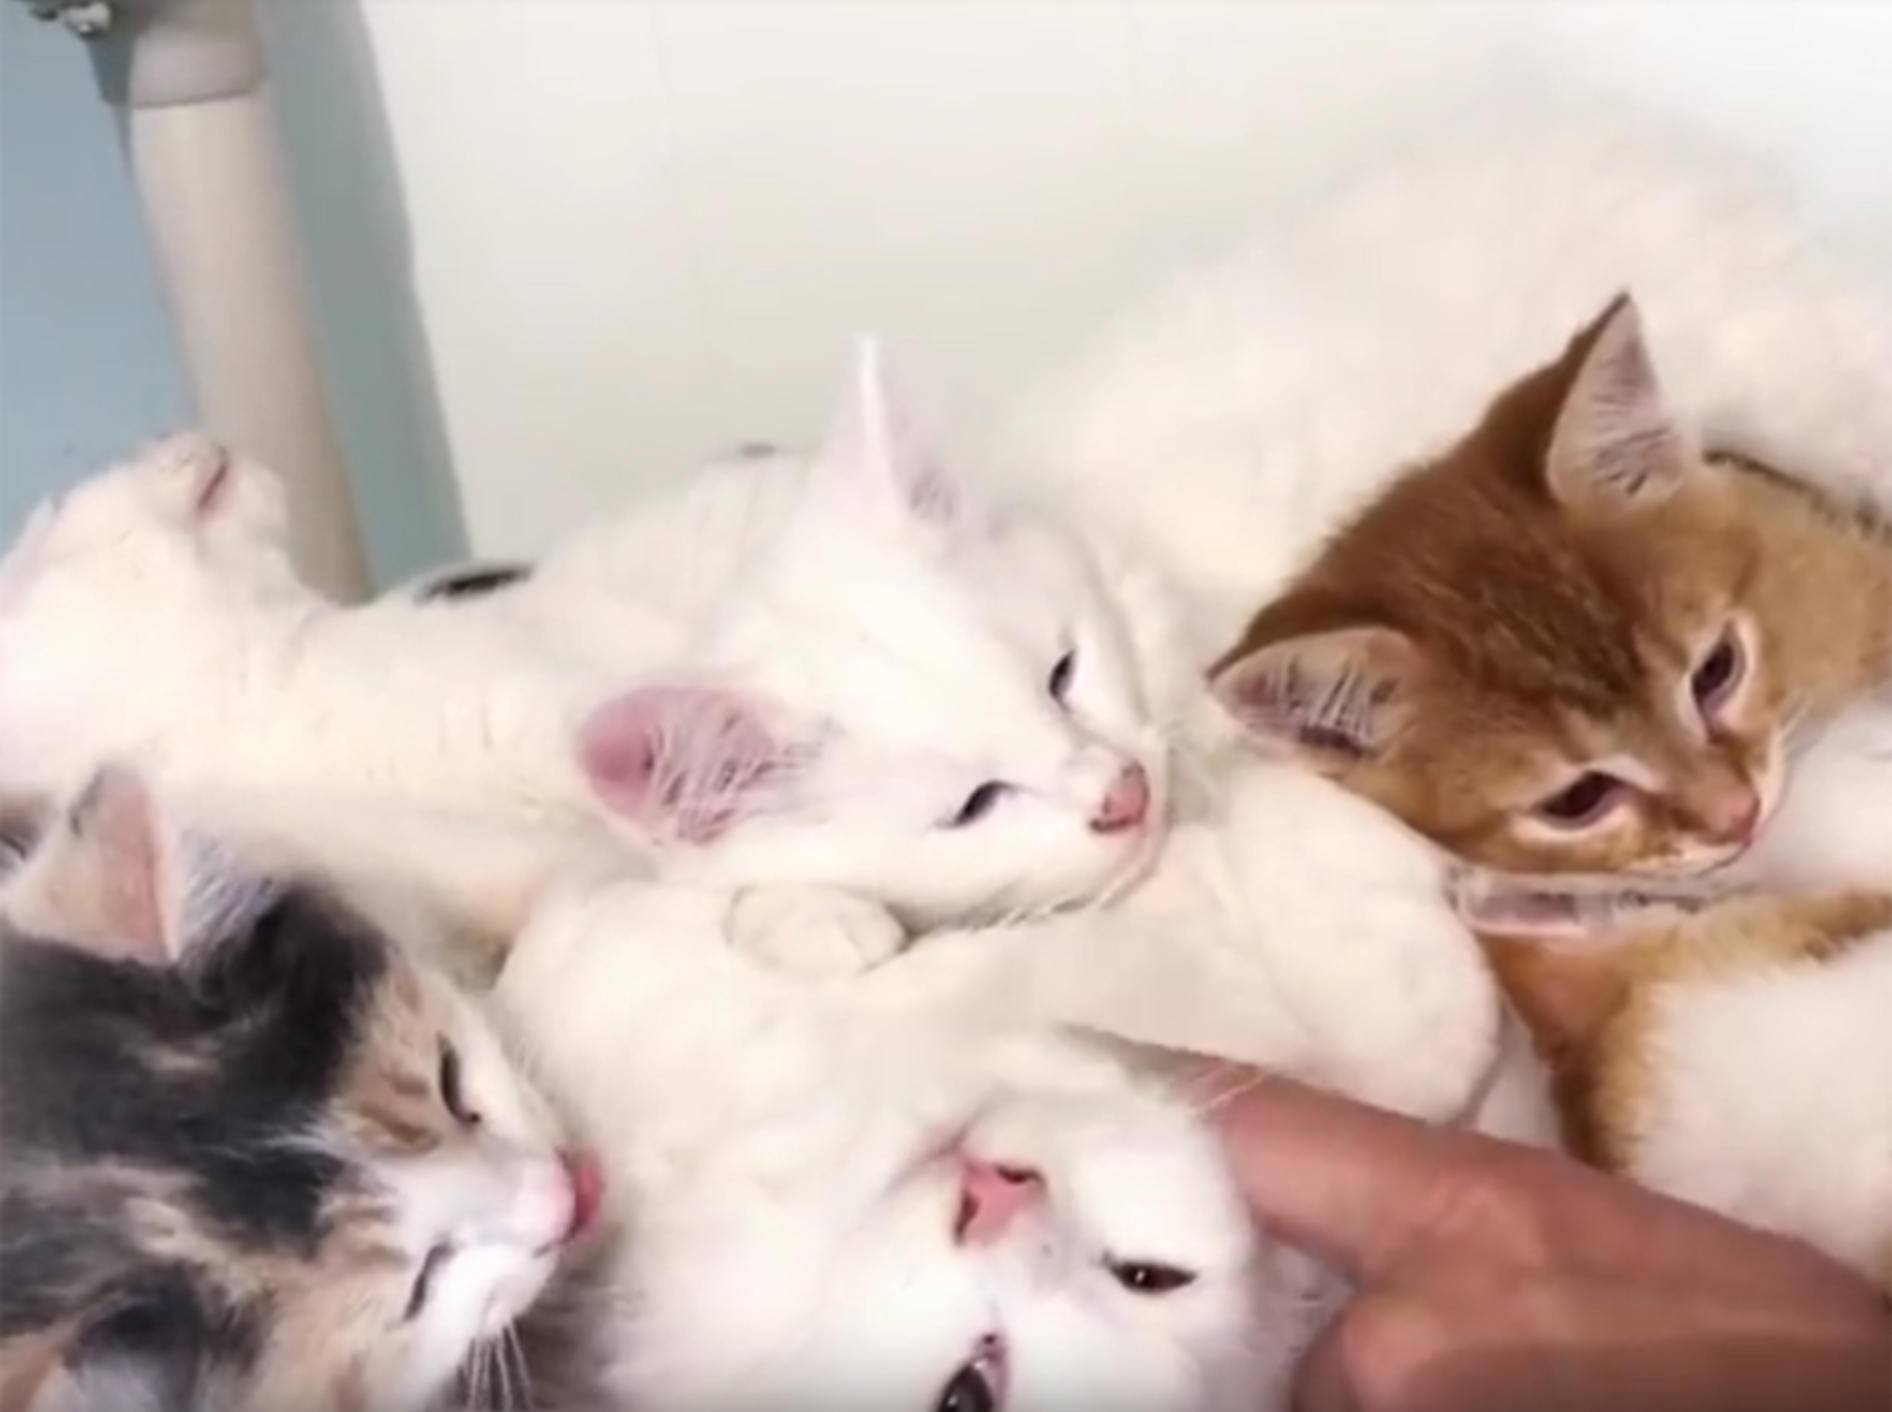 Gerettete Streunerkatzen erholen sich von Waldbrandtrauma – YouTube / TinyKittens HQ